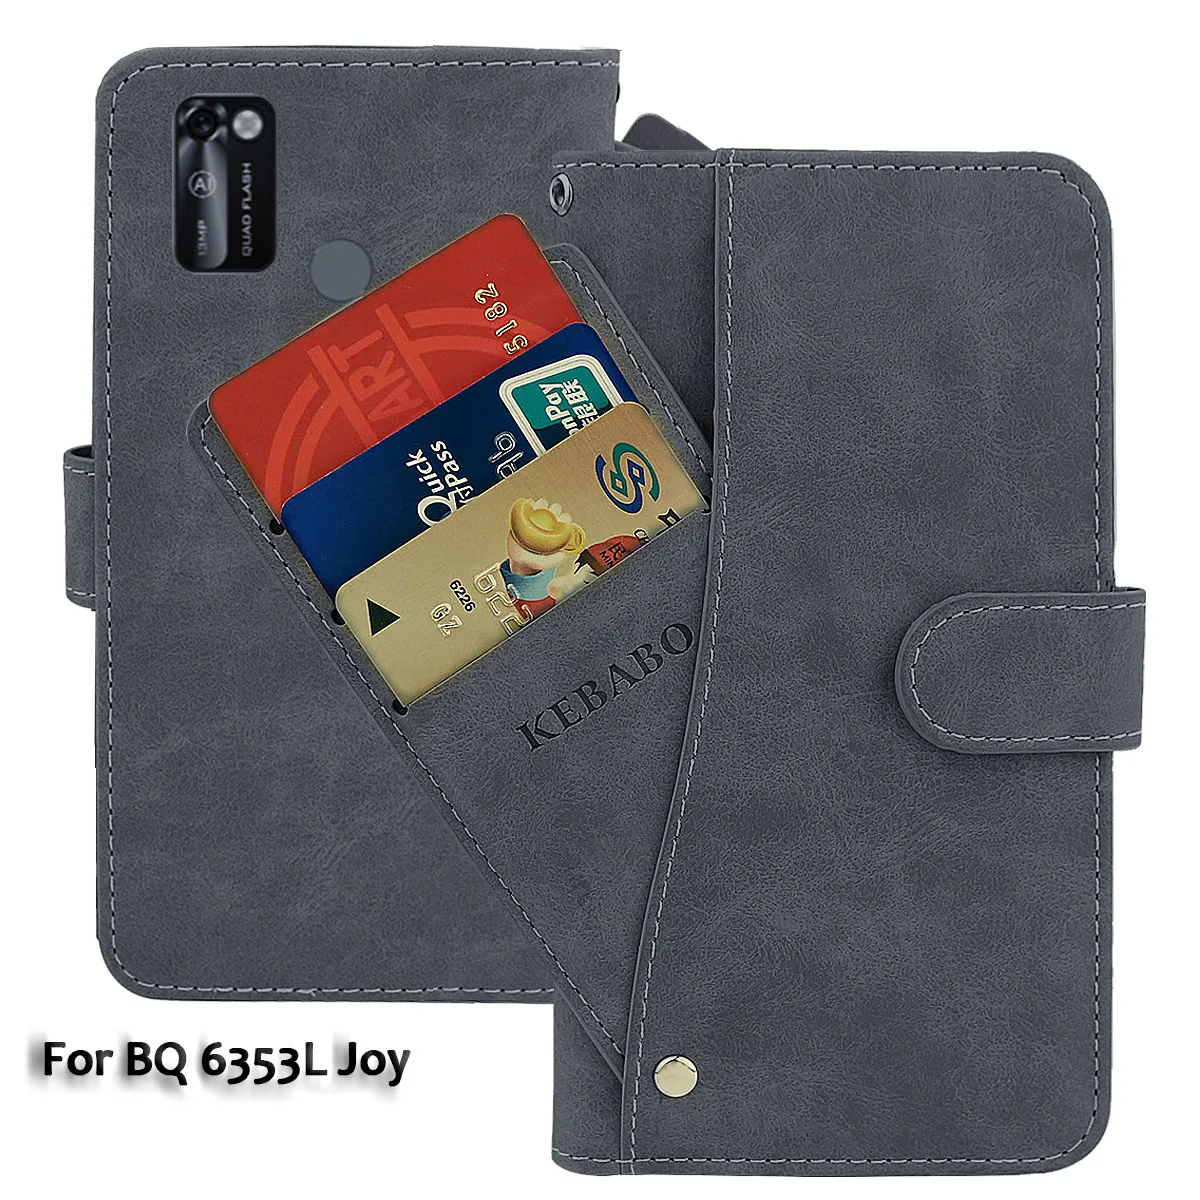 

Кожаный чехол-кошелек BQ 6353L Joy, модный роскошный флип-чехол 6,26 дюйма с передней картой 6353L Joy BQ, магнитные чехлы для телефонов